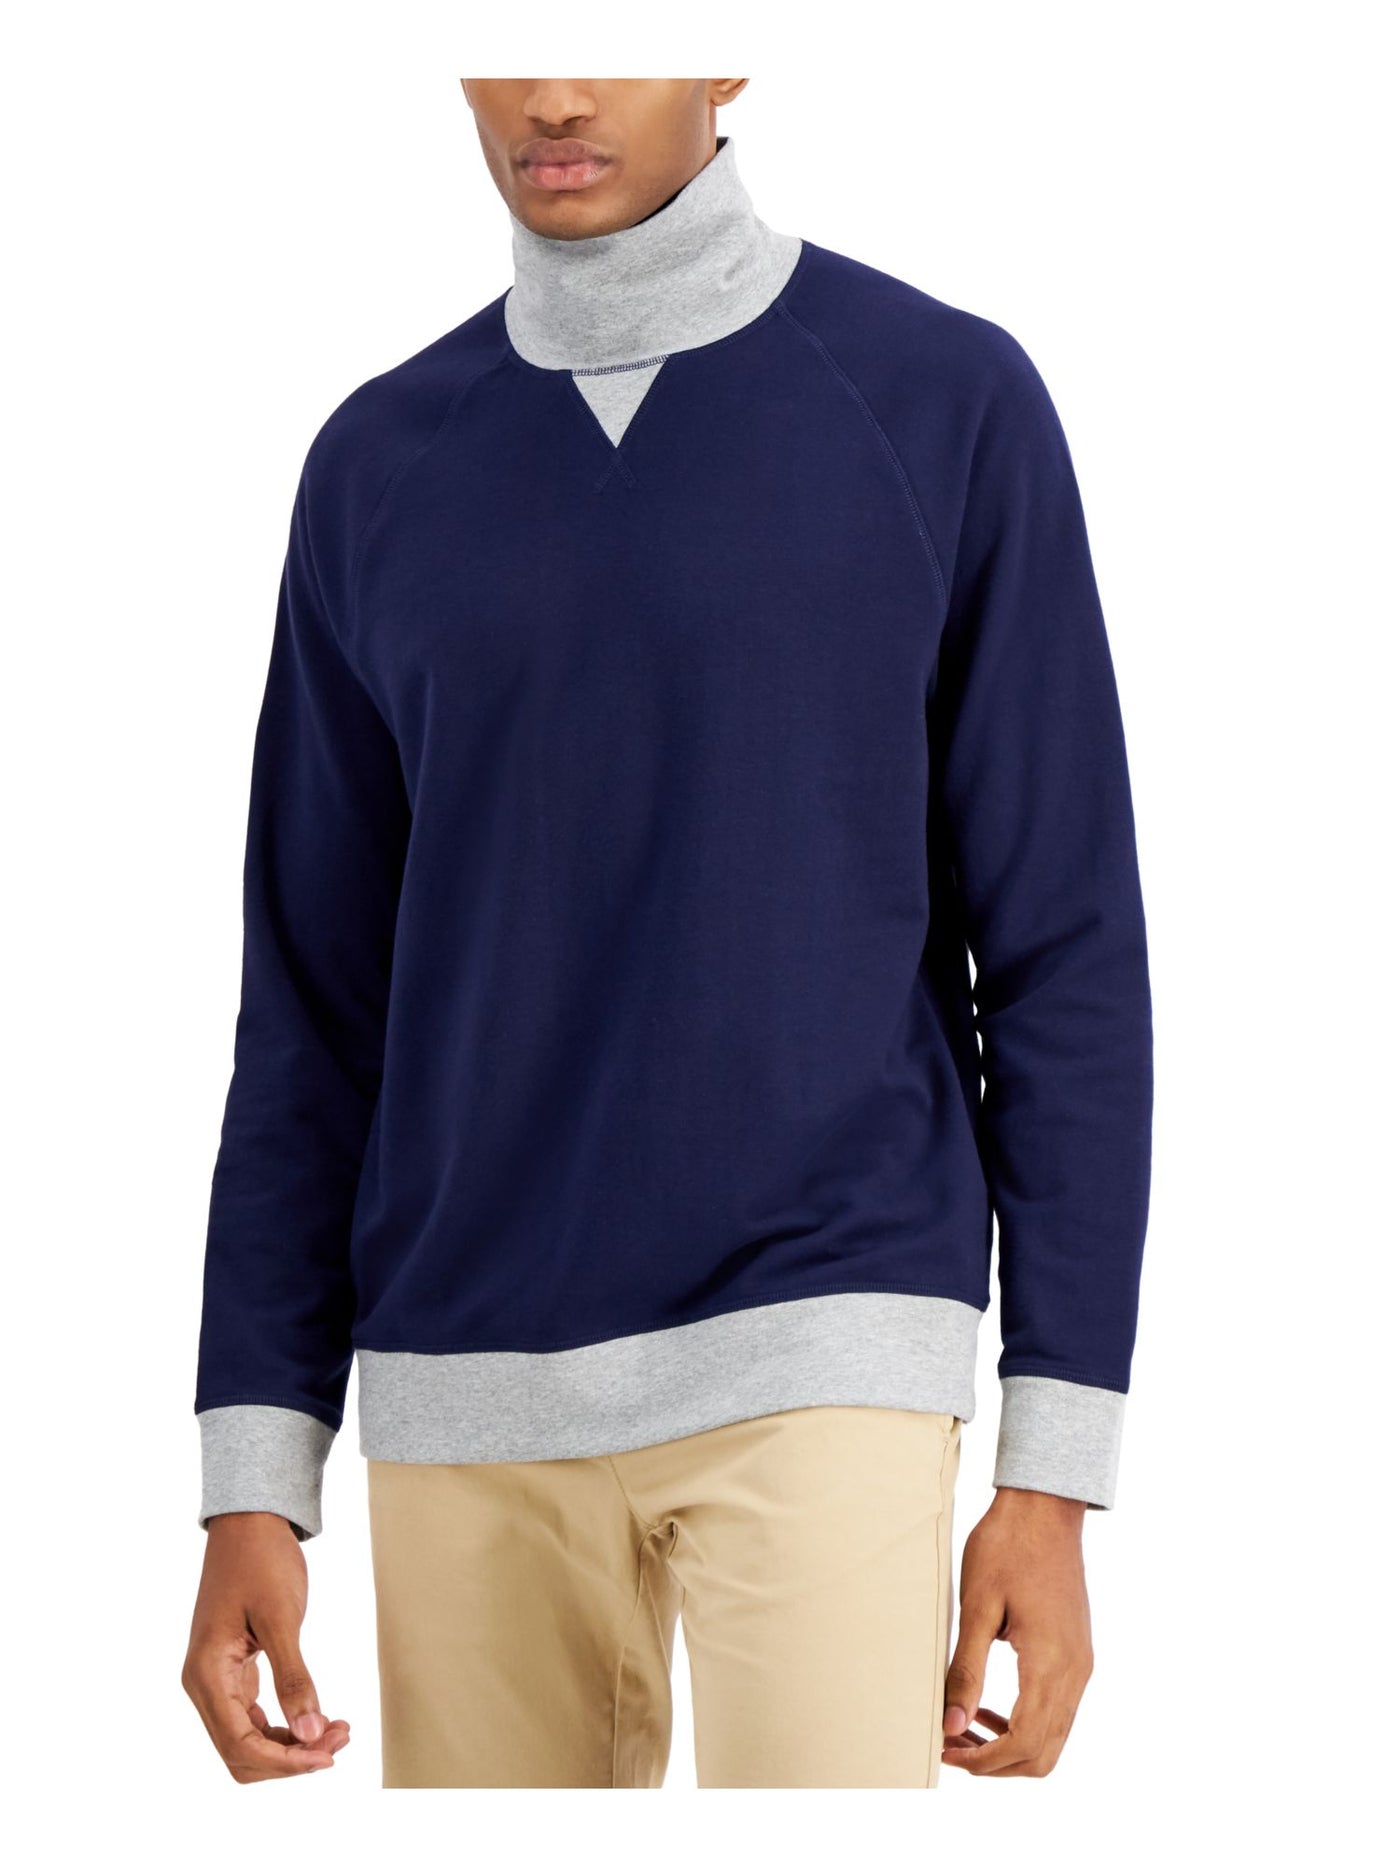 CLUBROOM Mens Navy Color Block Turtle Neck Classic Fit Fleece Sweatshirt S